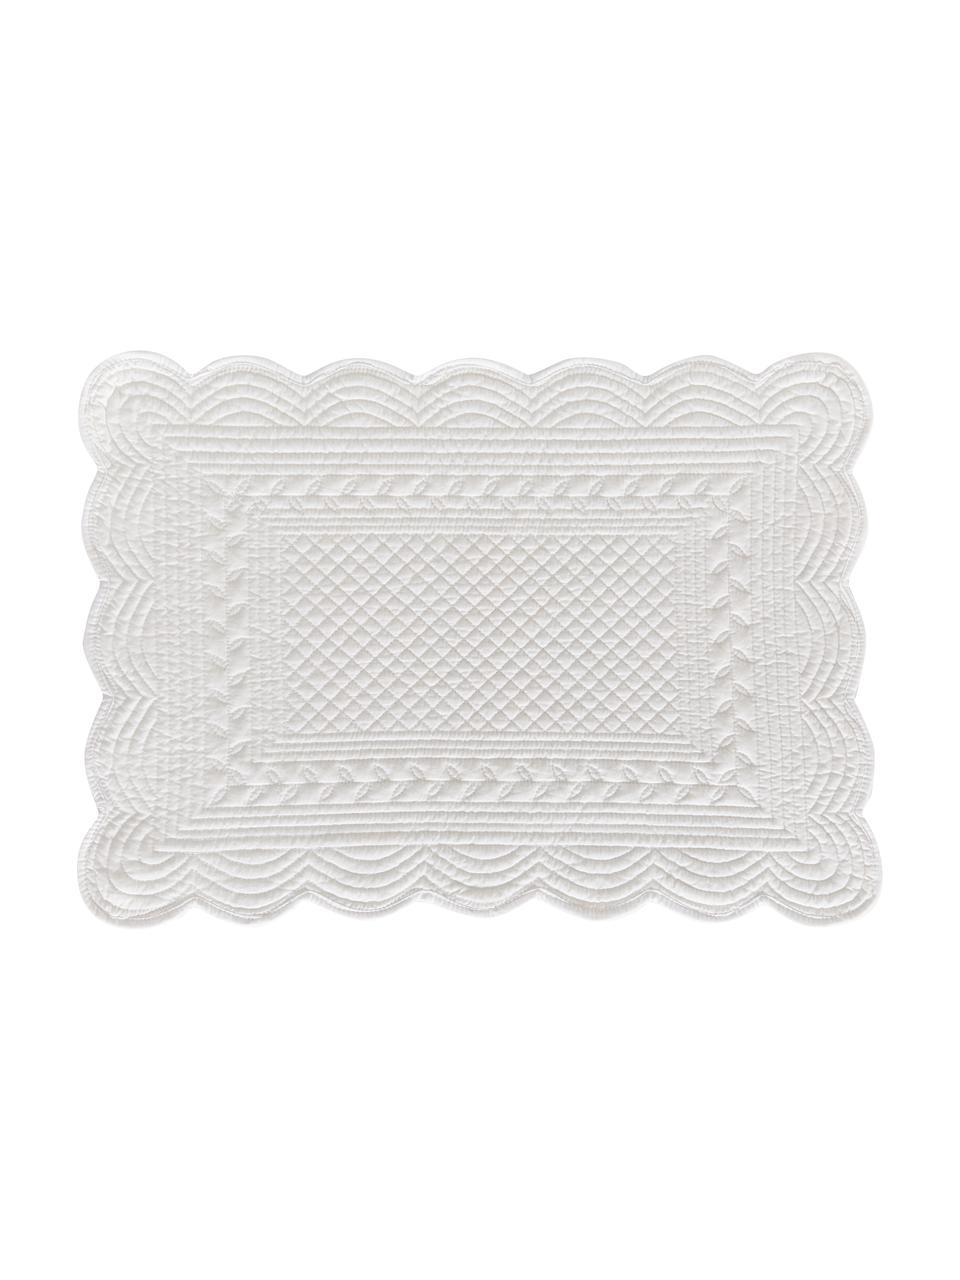 Baumwoll-Tischsets Boutis in Weiß, 2 Stück, 100% Baumwolle, Weiß, B 34 x L 48 cm